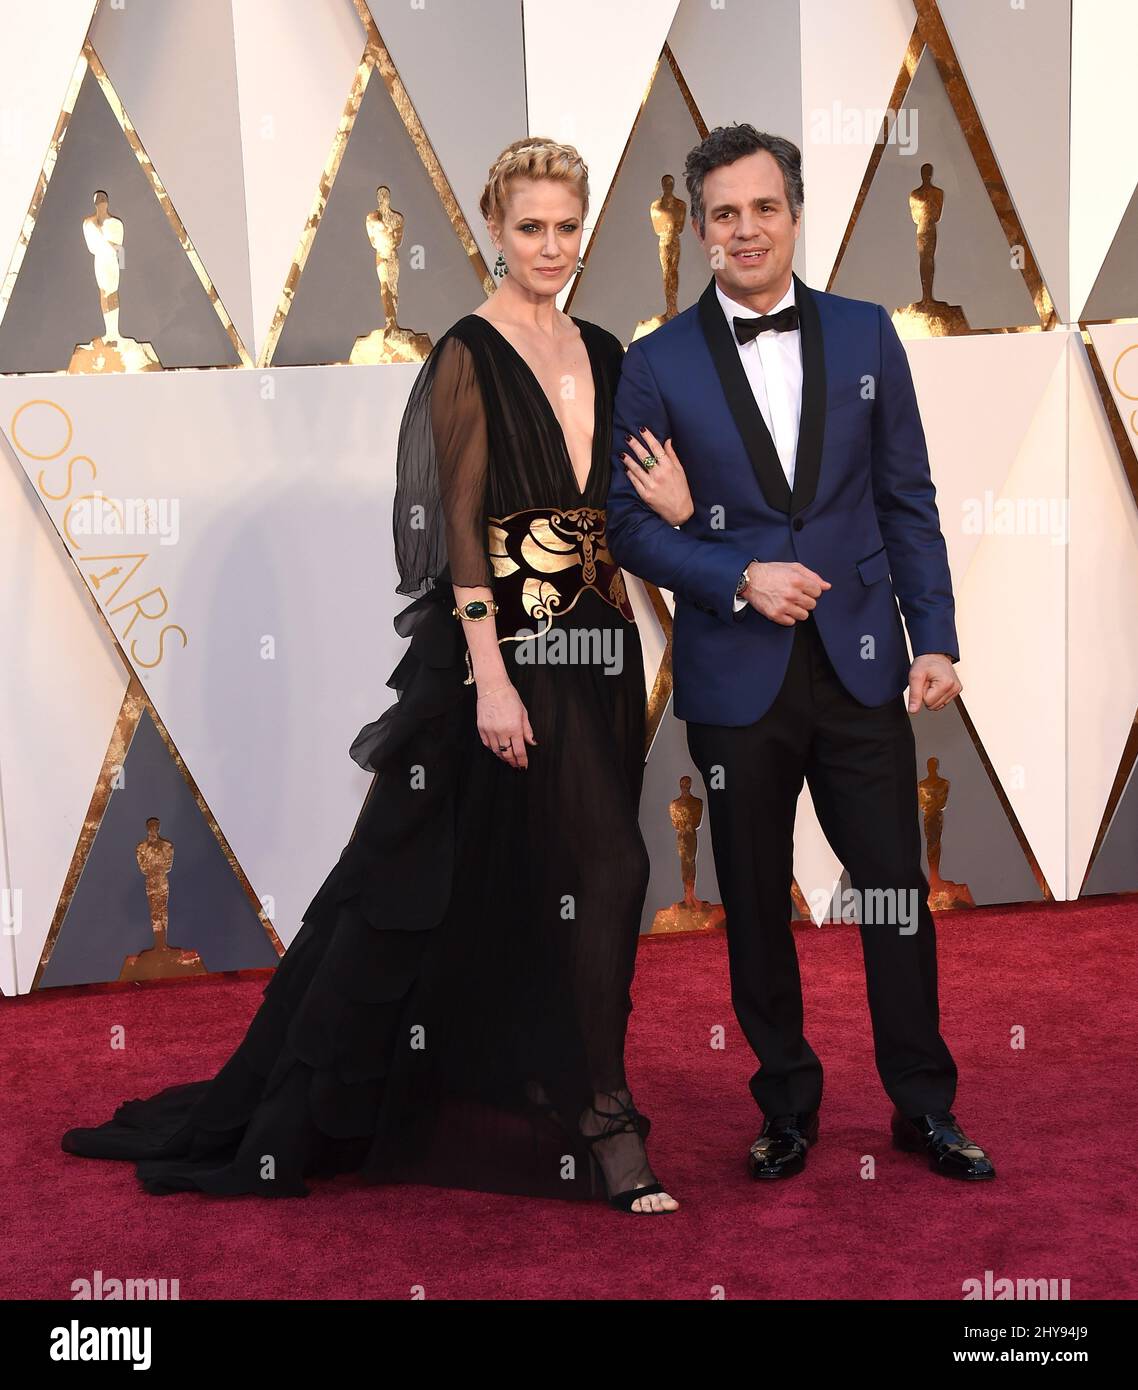 Mark Ruffalo et Sunrise Coigney assistent aux Oscars annuels 88th de l'Académie au Dolby Theatre Banque D'Images